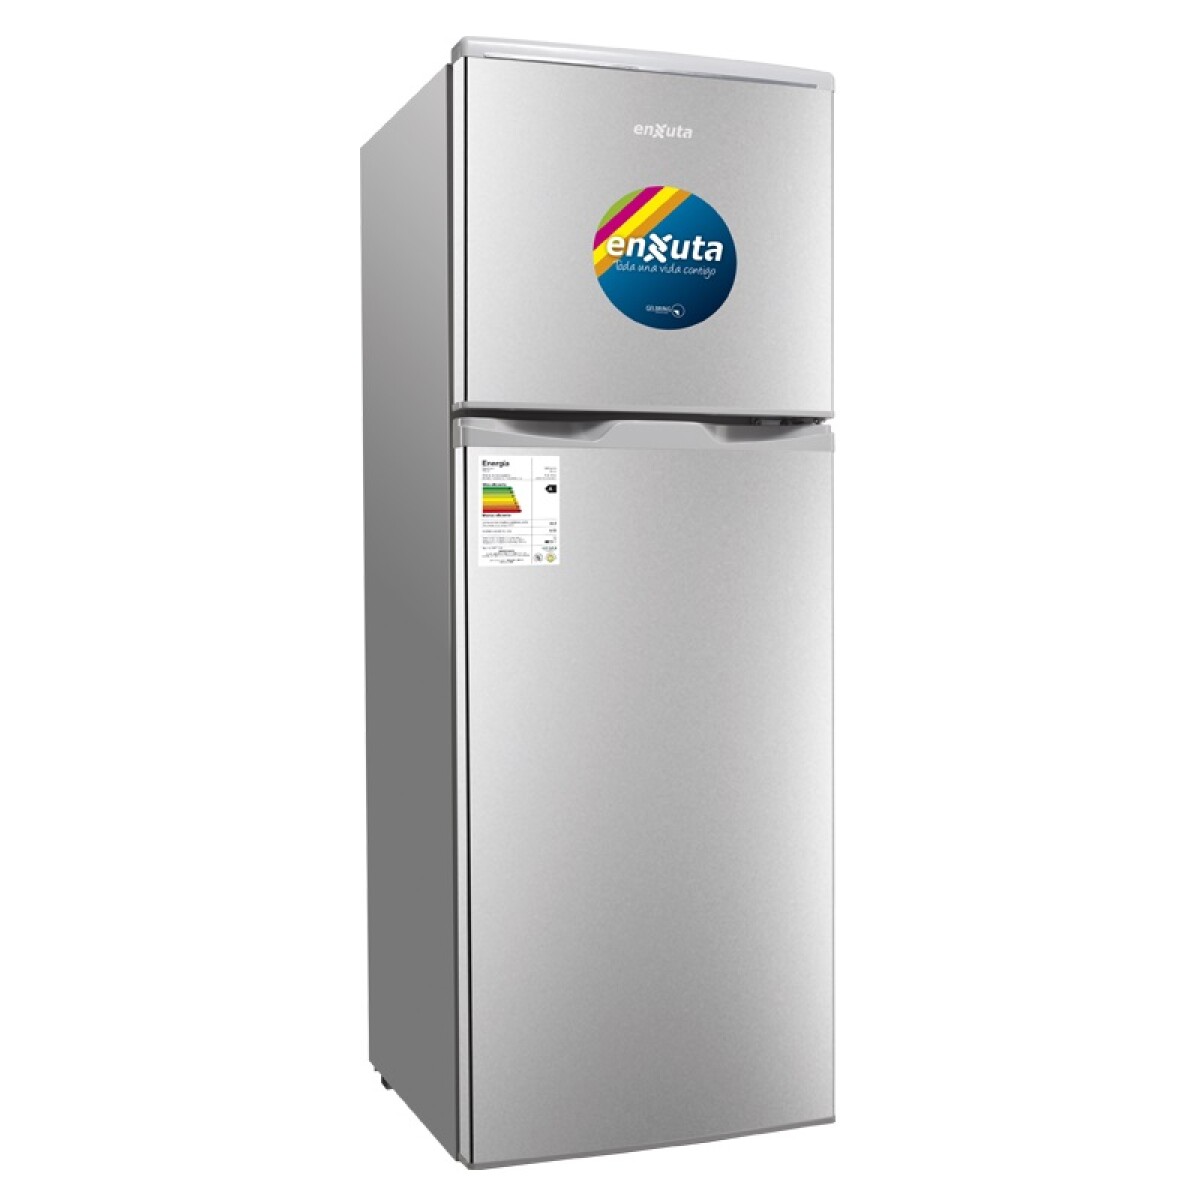 RefrigeradorFríoHúmedo132LitrosSilver RENX19140FHS - SILVER 